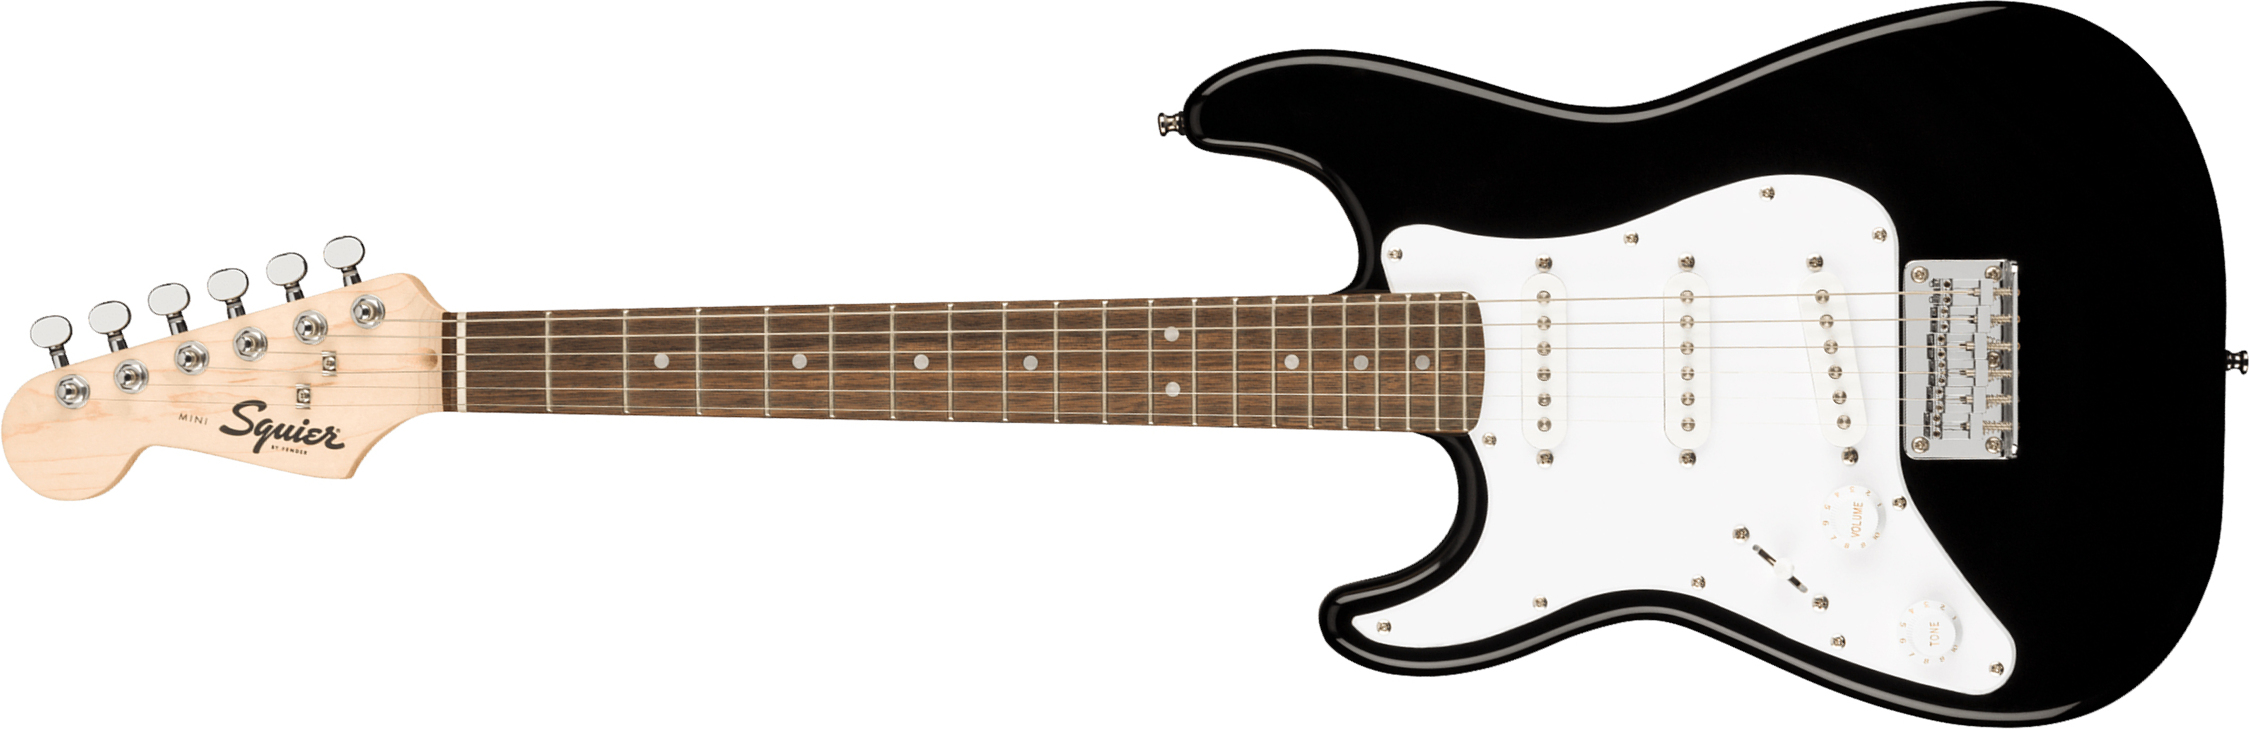 Squier Mini Strat V2 Lh Gaucher Ht Sss Lau - Black - Linkshandige elektrische gitaar - Main picture